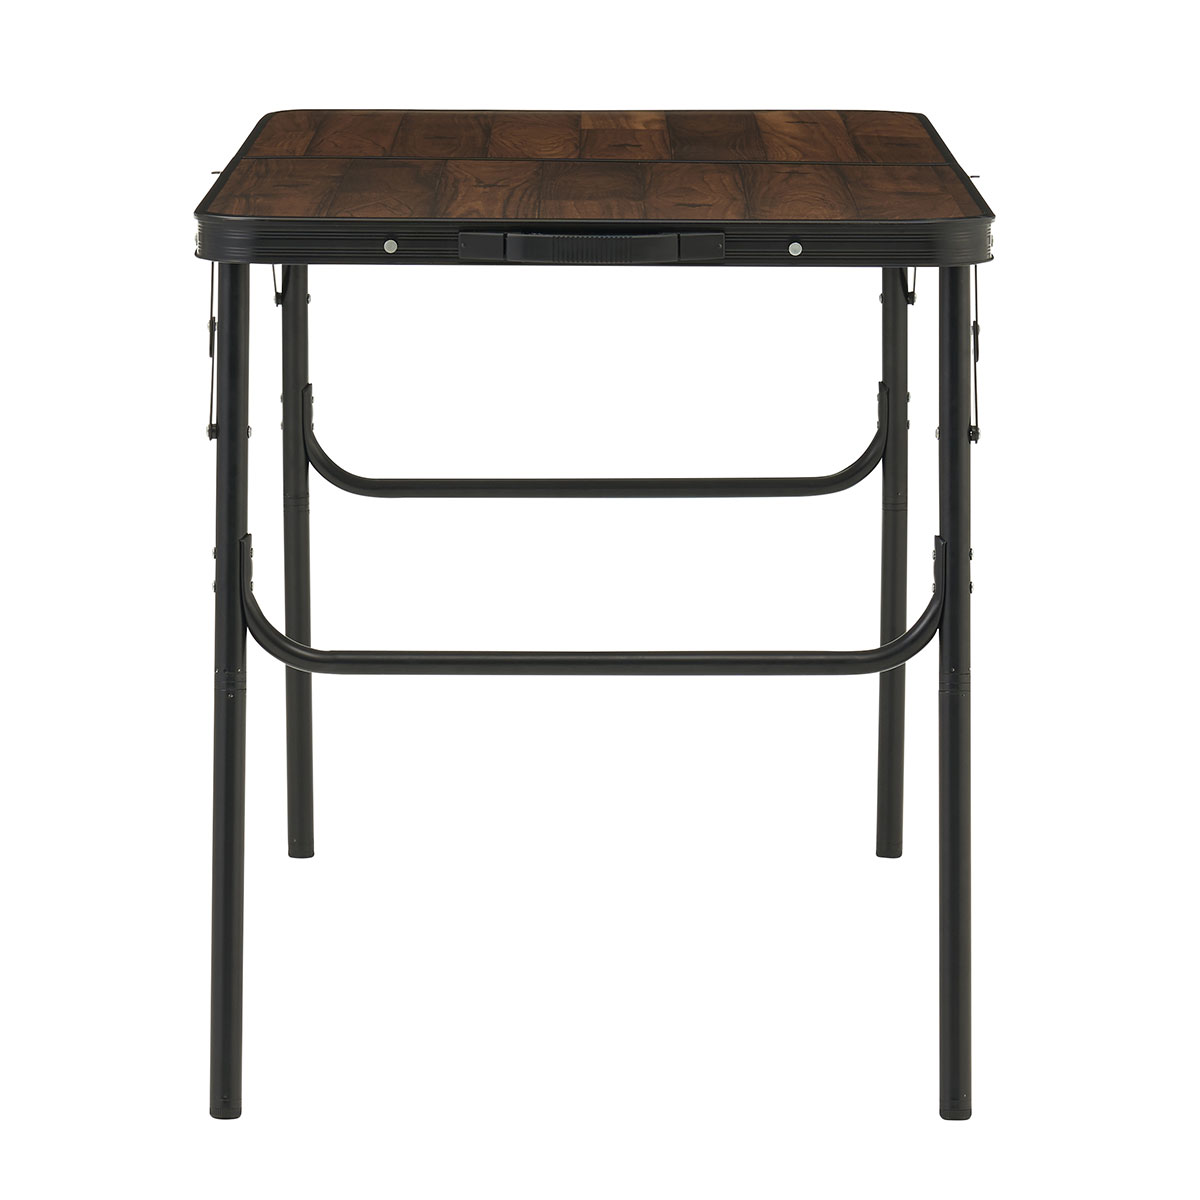 Tracksleeper テーブル 12060|ギア|家具|テーブル|製品情報|ロゴス ...